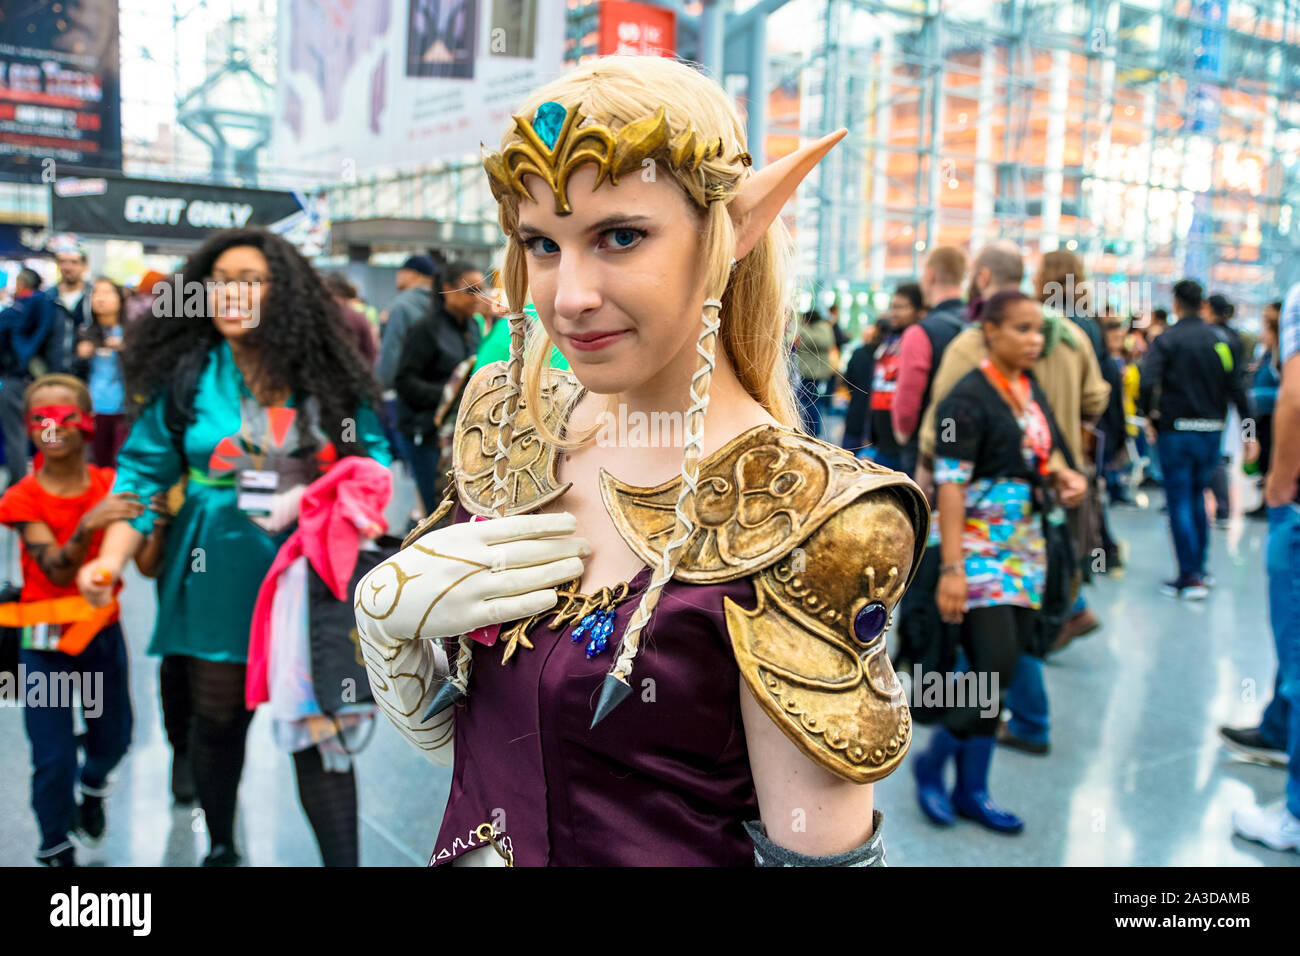 Jacob K. Javits Convention Center, New York New York - le 9 octobre 2016 : une belle cosplayeuse habillée comme la princesse Zelda. Banque D'Images